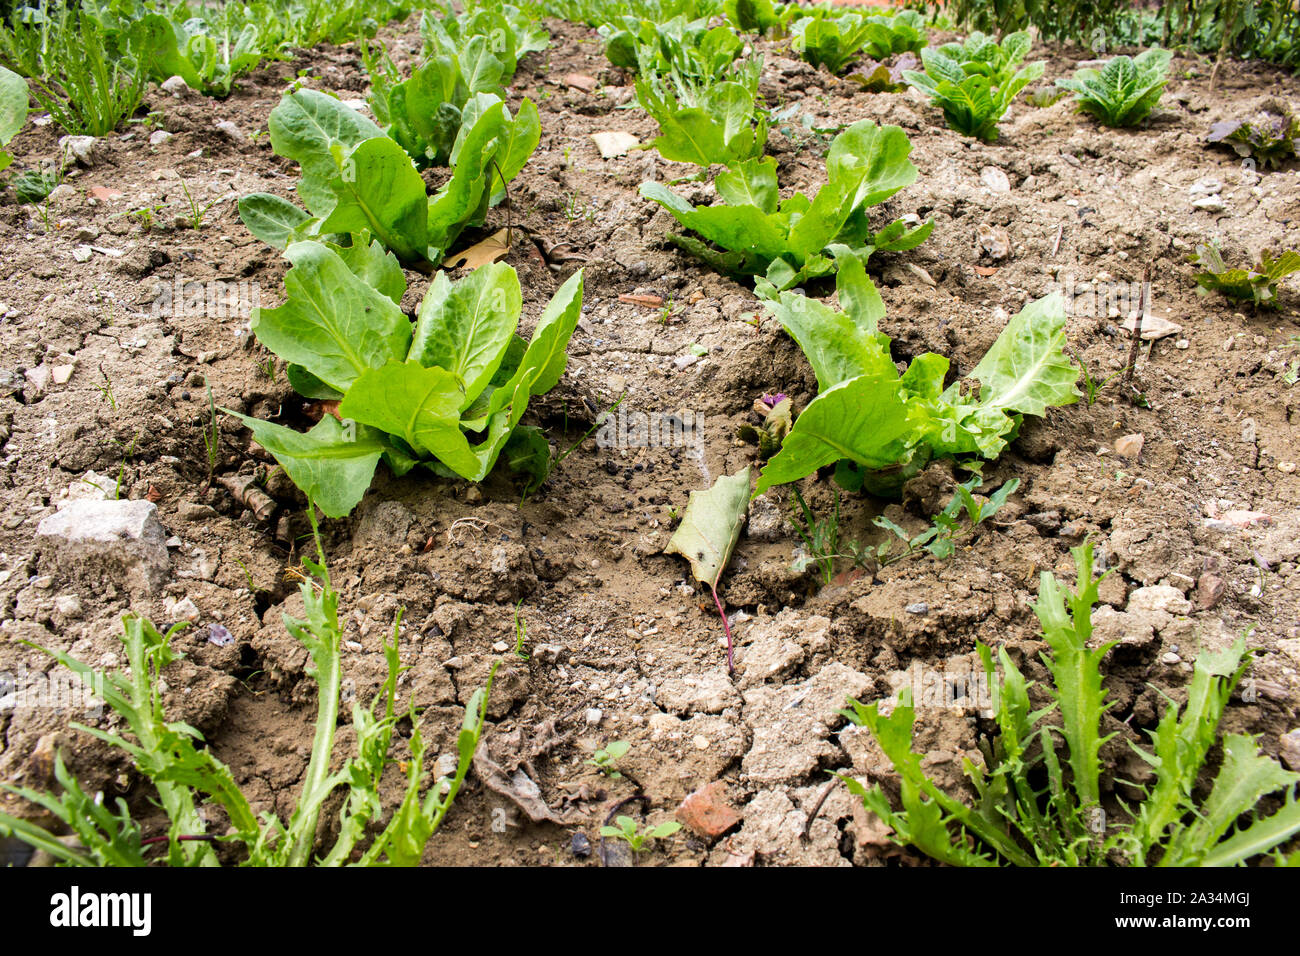 L'agriculture biologique, les laitues, les endives et salade plants cultivés naturellement sans fertilisation Banque D'Images